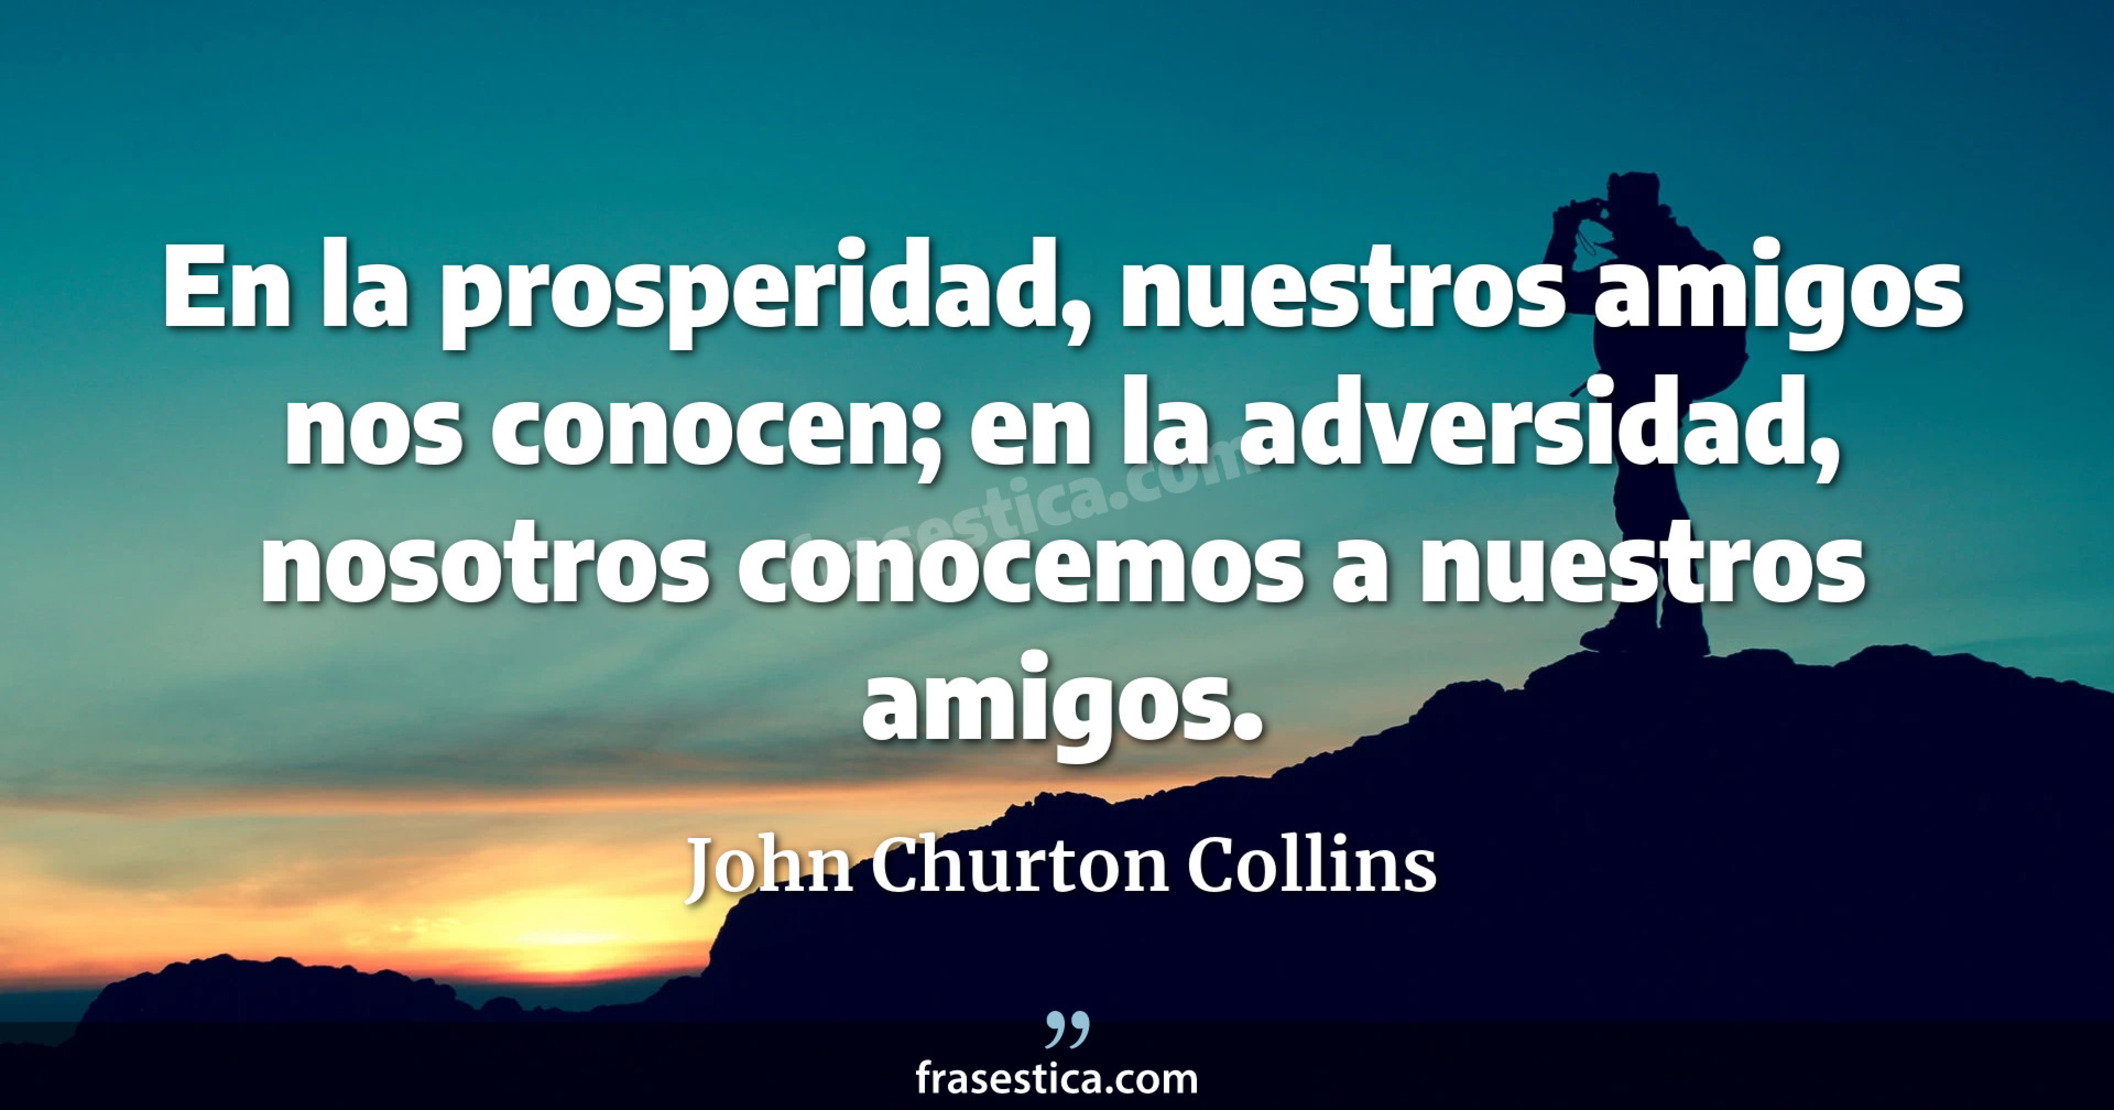 En la prosperidad, nuestros amigos nos conocen; en la adversidad, nosotros conocemos a nuestros amigos. - John Churton Collins